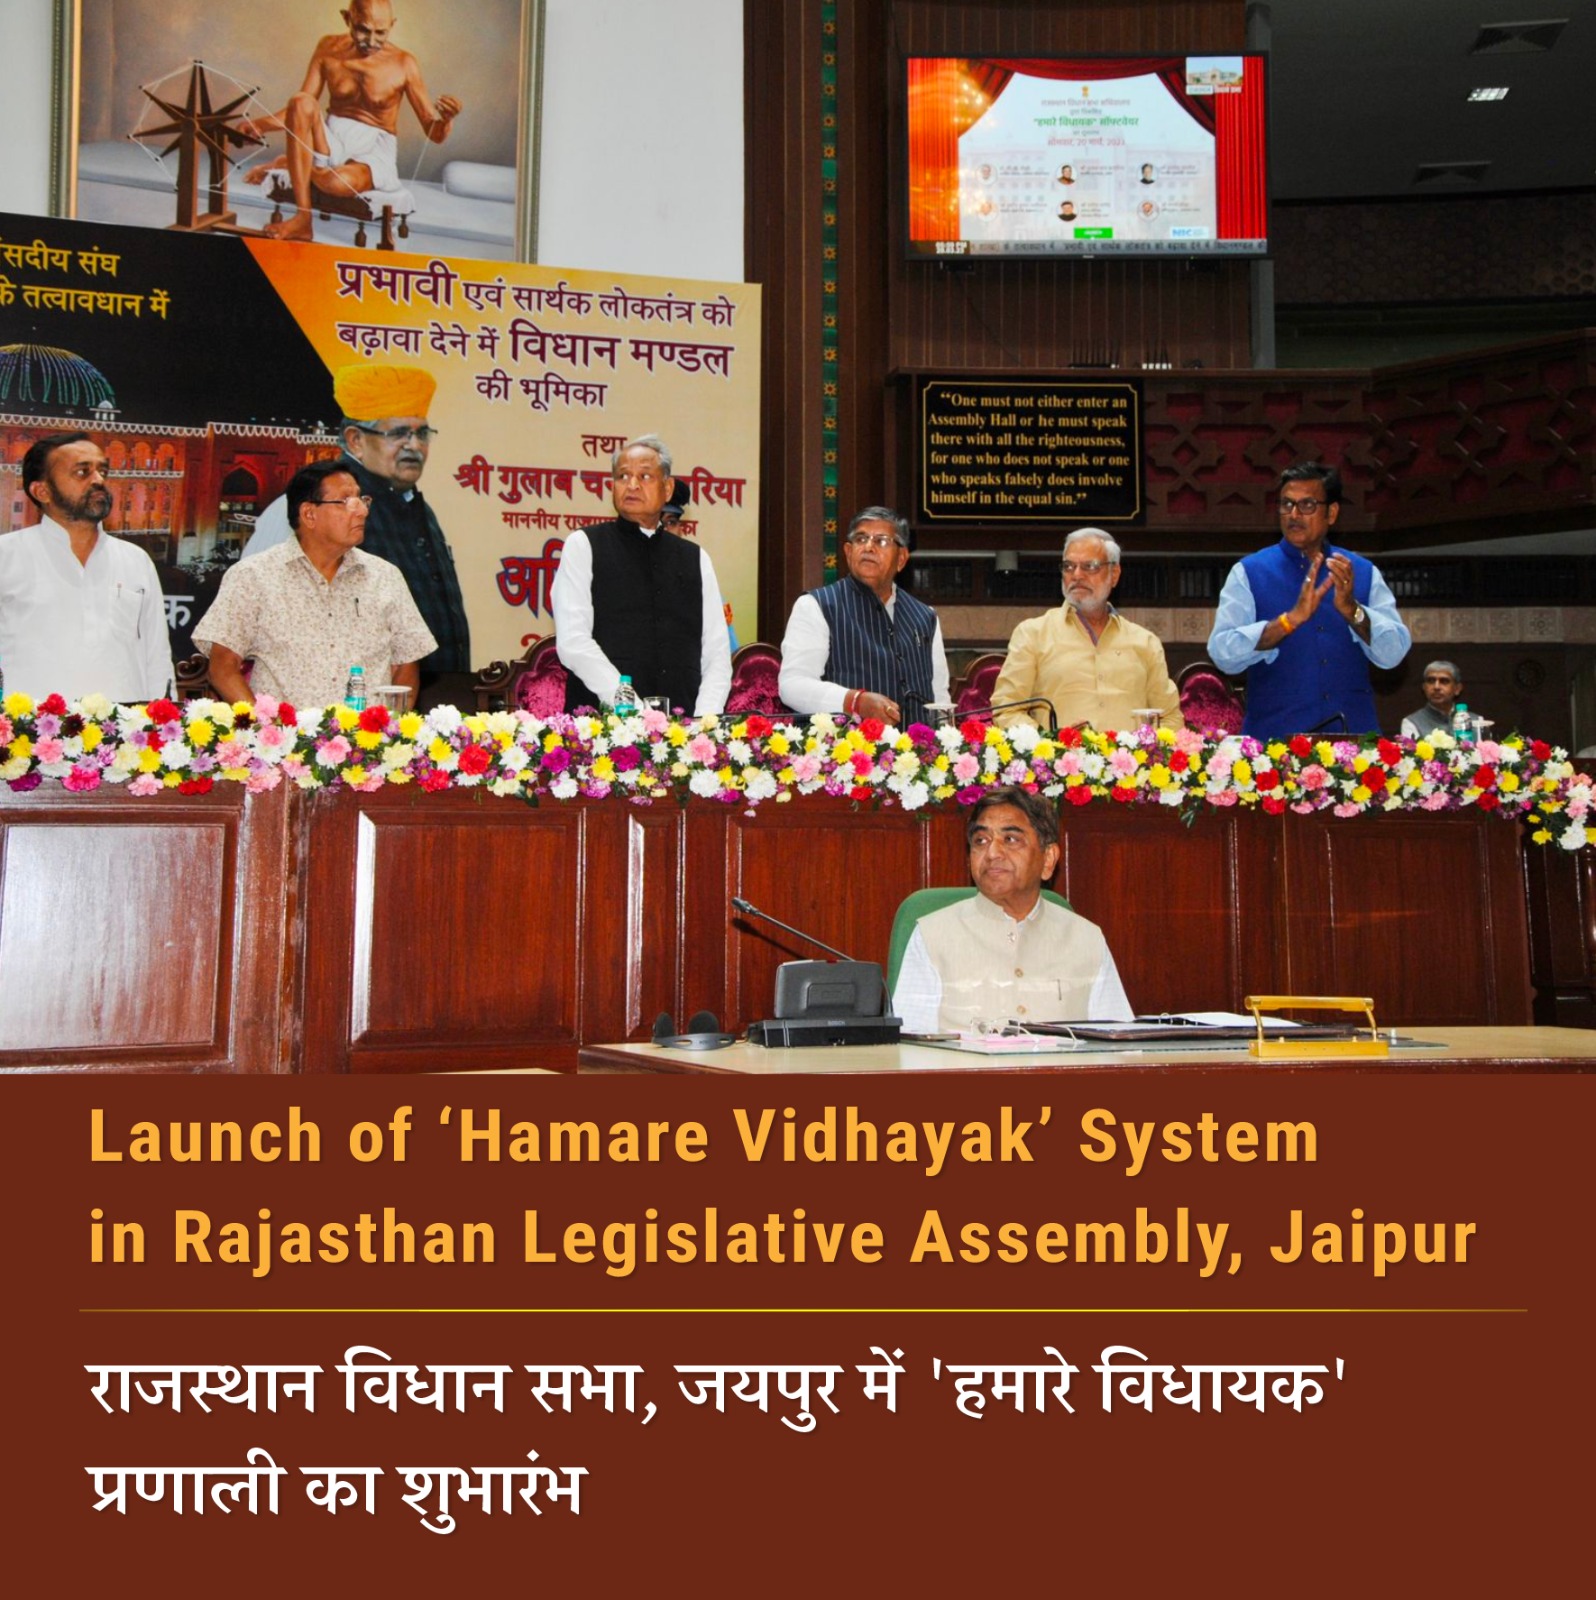 Image of राजस्थान विधान सभा, जयपुर में ‘हमारे विधायक’ प्रणाली का शुभारंभ।